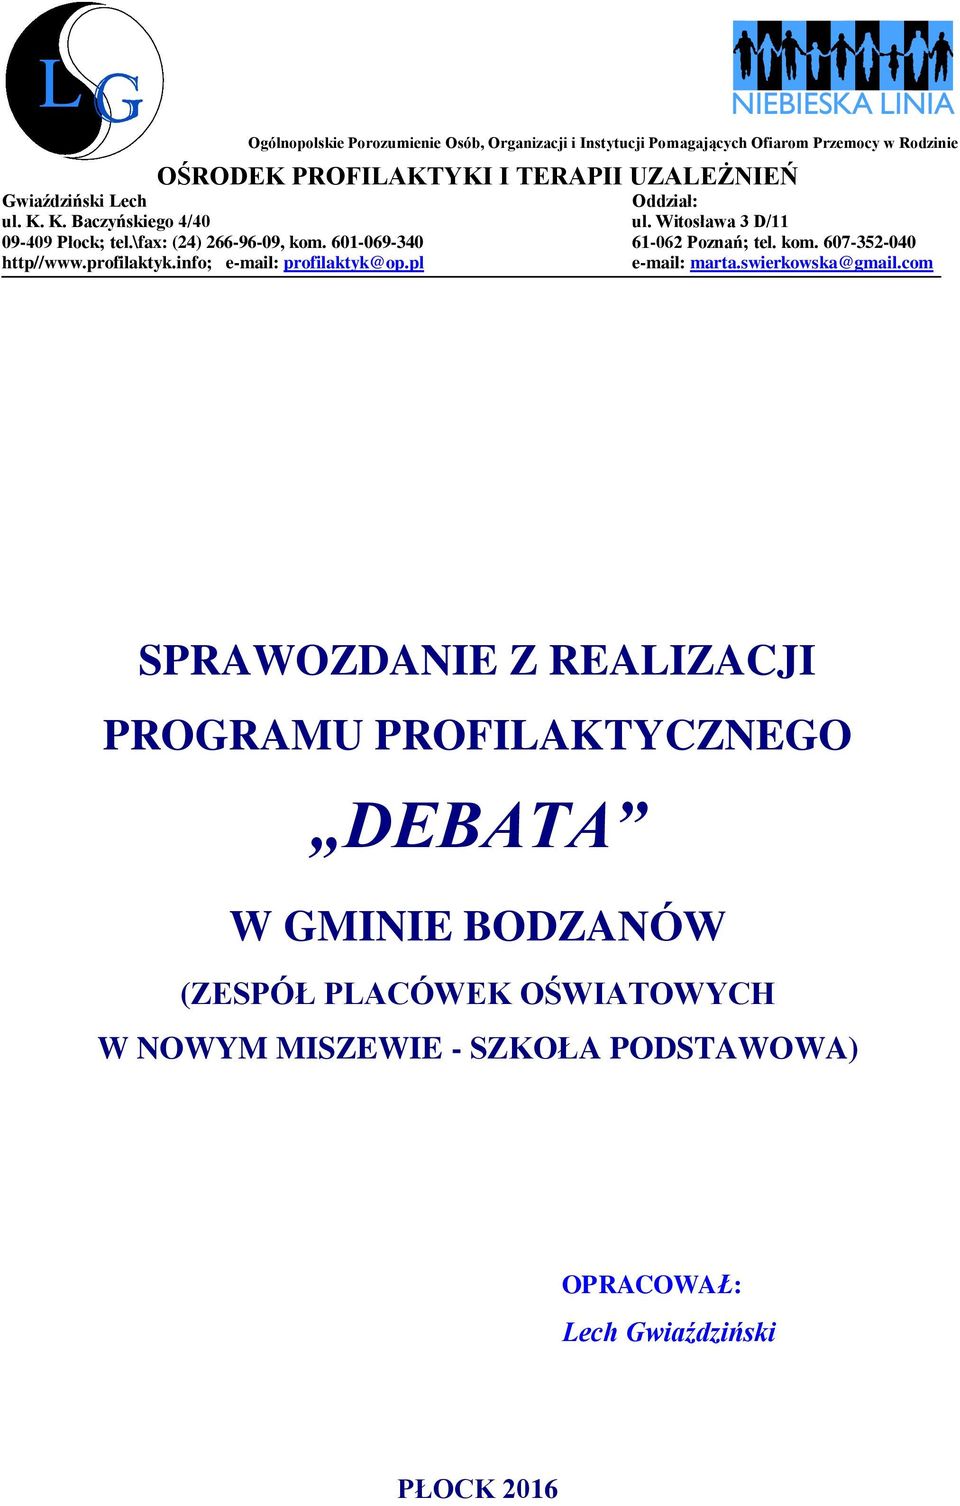 601-069-340 61-062 Poznań; tel. kom. 607-352-040 http//www.profilaktyk.info; e-mail: profilaktyk@op.pl e-mail: marta.swierkowska@gmail.